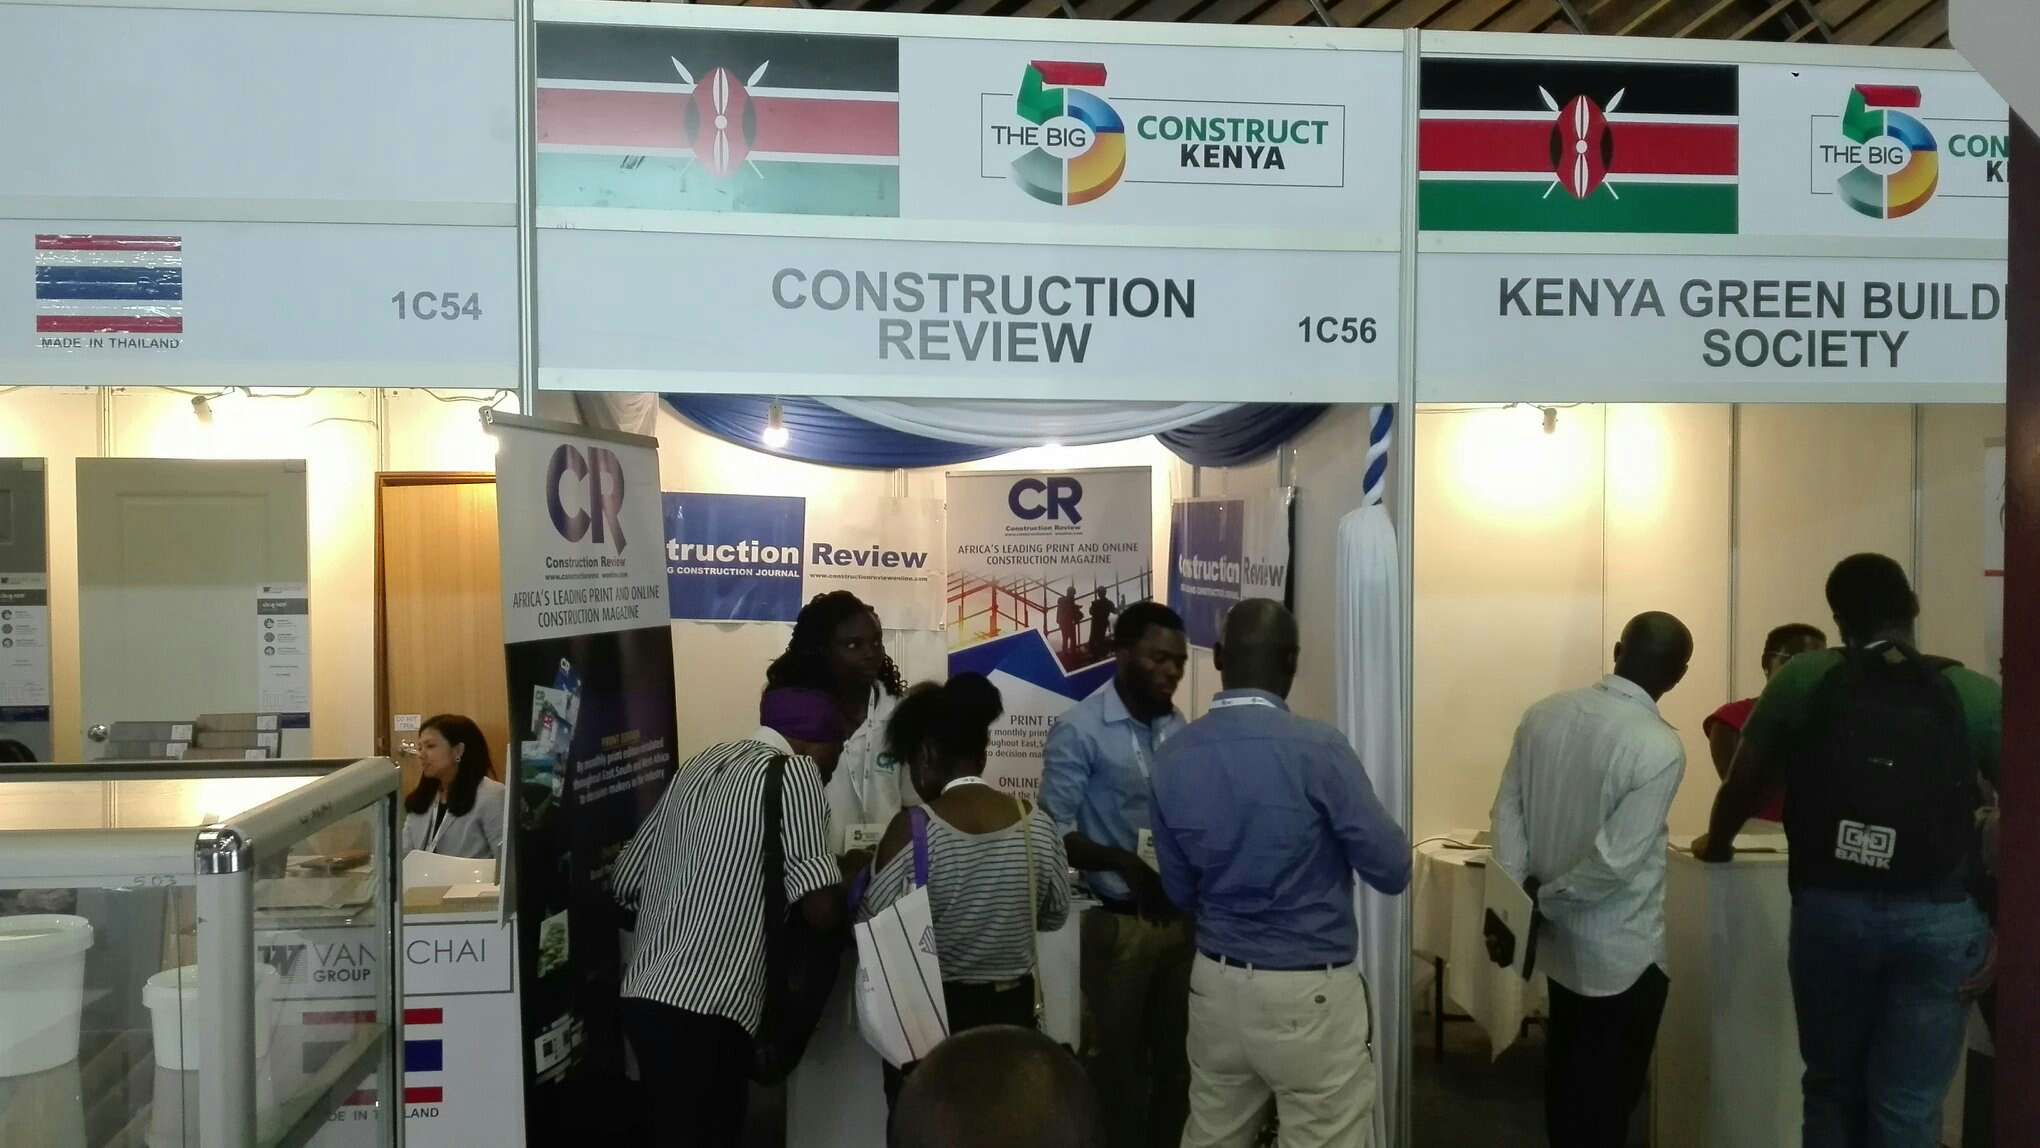 Construction Review participe au Big 5 Construct Kenya